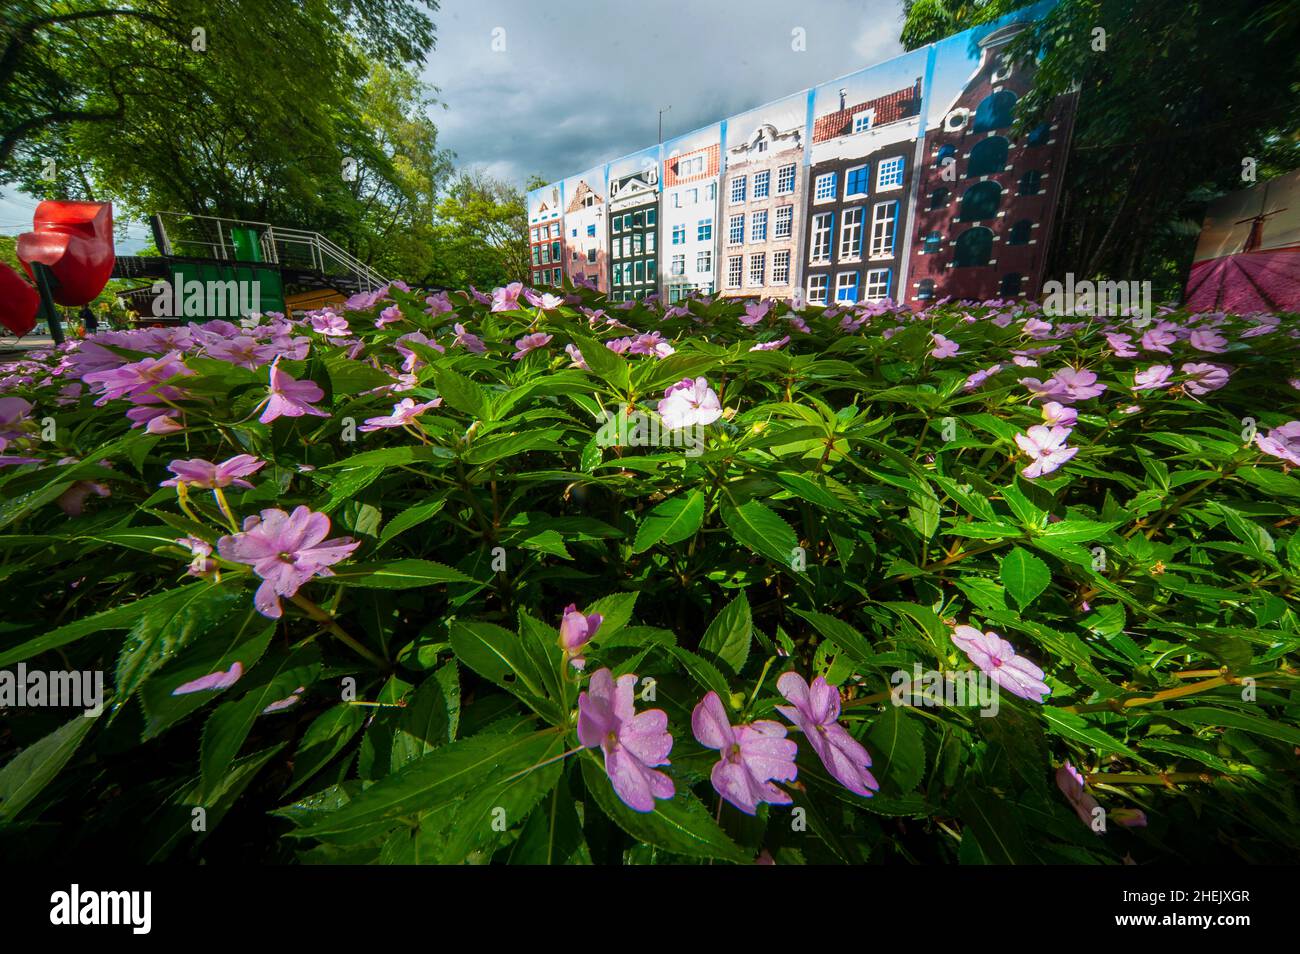 Holambra ist der größte Hersteller von Blumen und Zierpflanzen in Lateinamerika, ist ein beliebtes Touristenziel, eine Stadt, die von niederländischen Einwanderern gebaut wurde Stockfoto